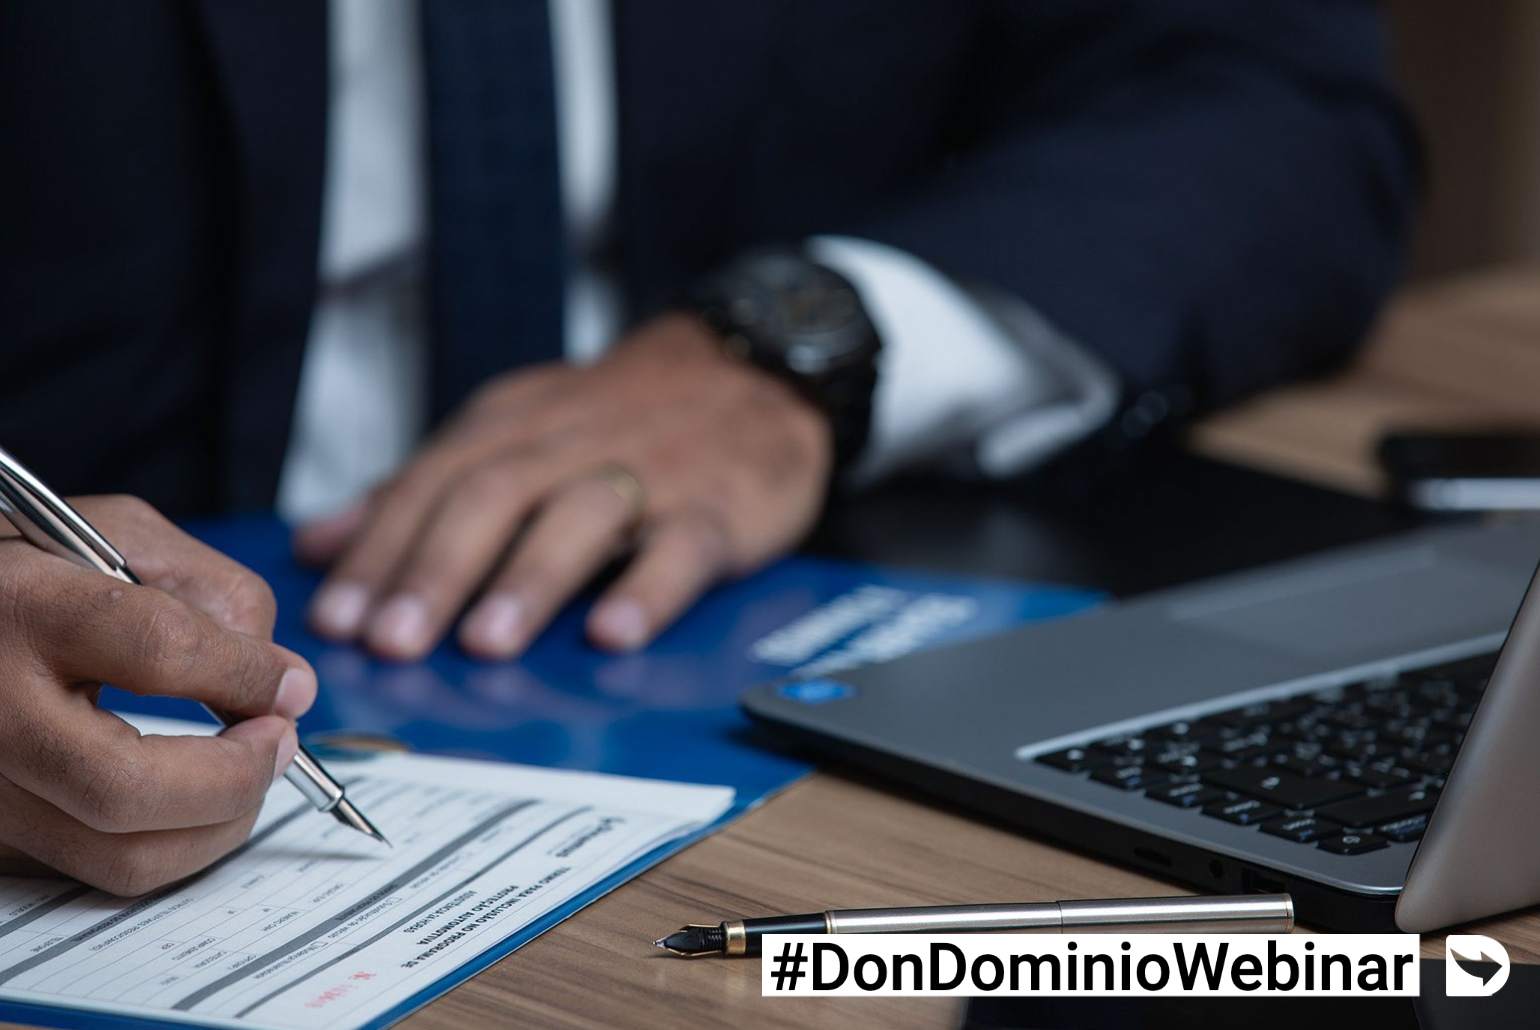 DonDominio Webinar: Aspectos a tener en cuenta para tener una web legal